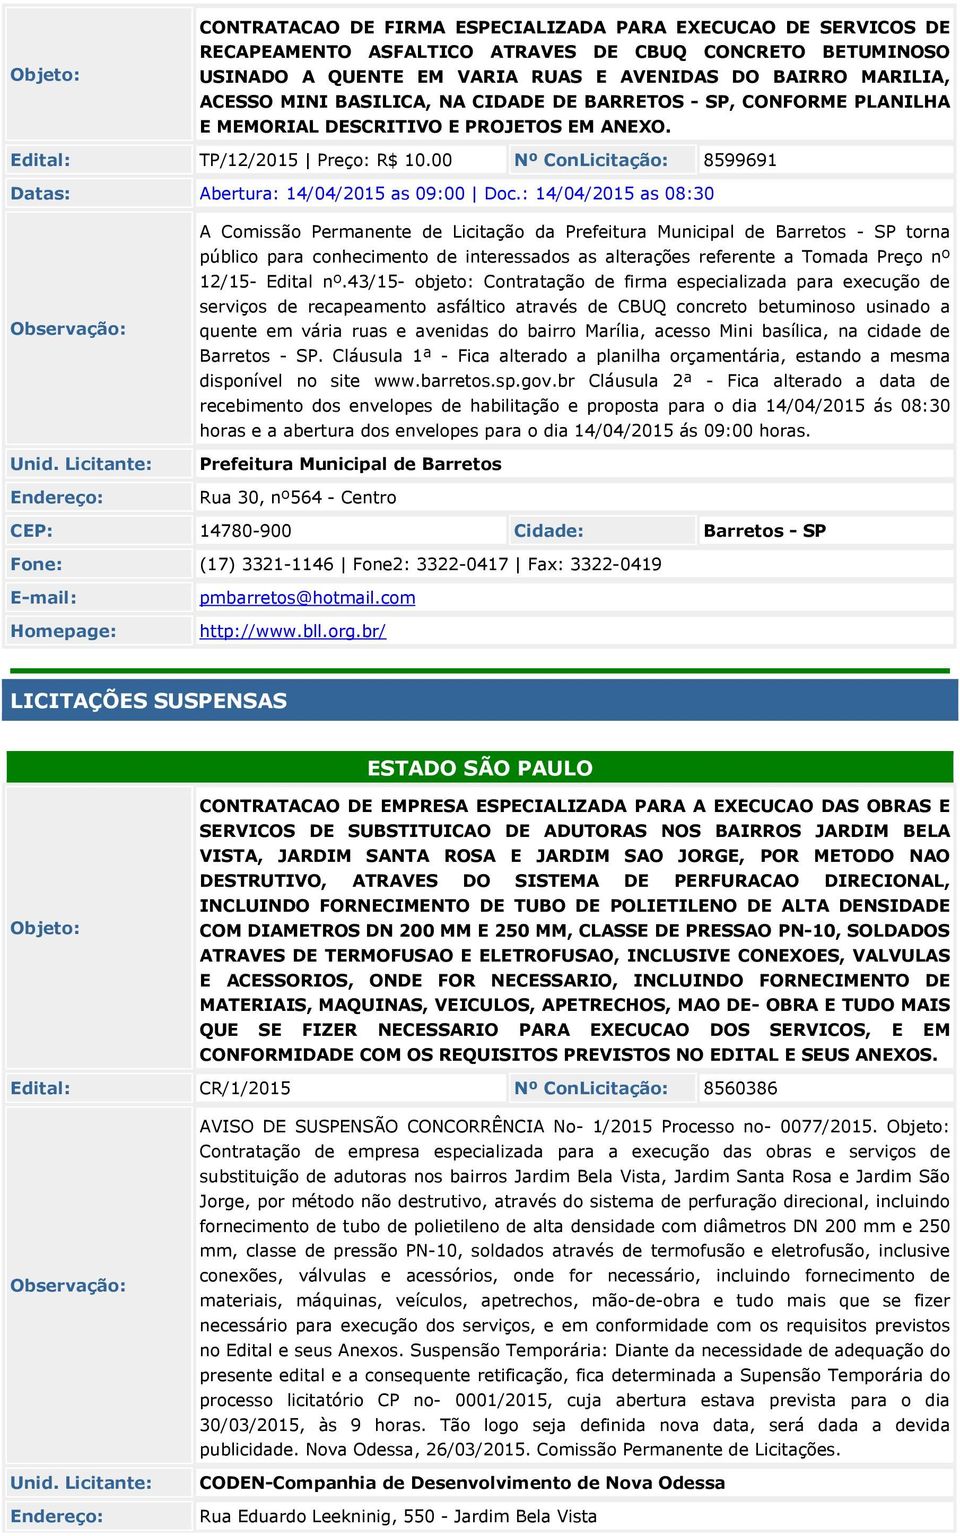 : 14/04/201 as 08:30 A Comissão Permanente de Licitação da Prefeitura Municipal de Barretos - SP torna público para conhecimento de interessados as alterações referente a Tomada Preço nº 12/1- Edital